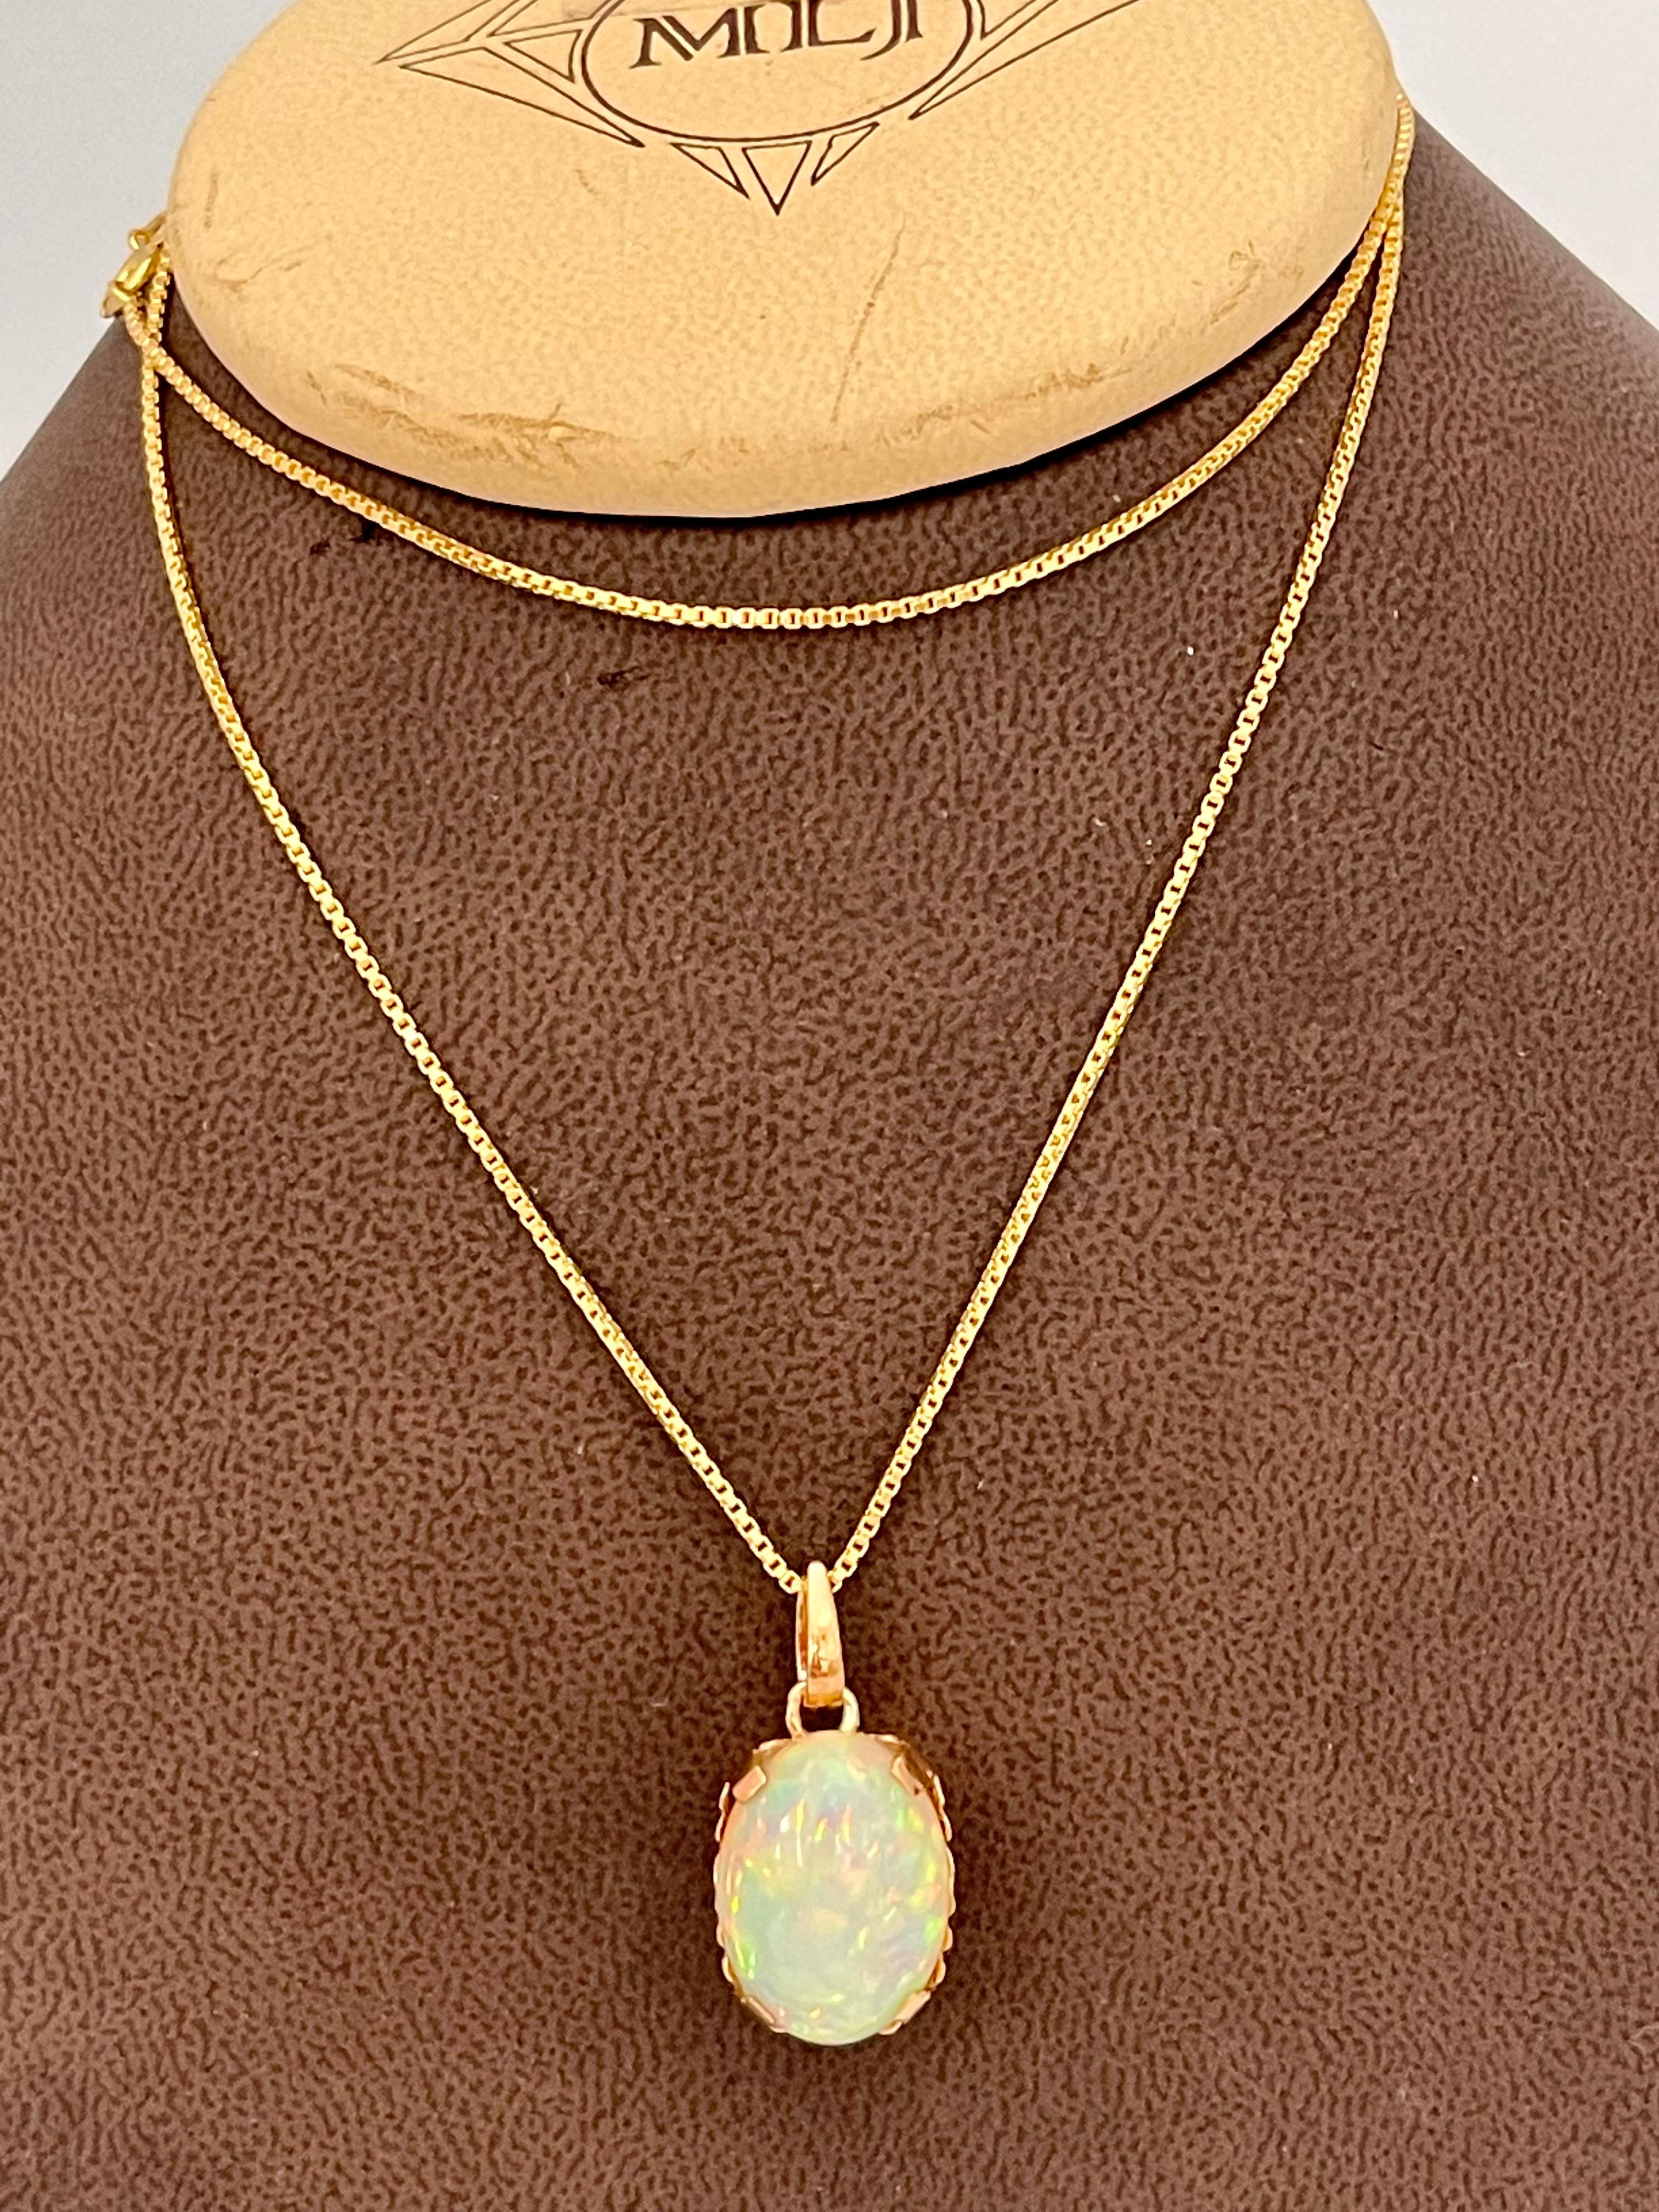 9 Carat Oval Ethiopian Opal Pendant / Necklace 18 Karat + 18 Kt Gold Chain 1